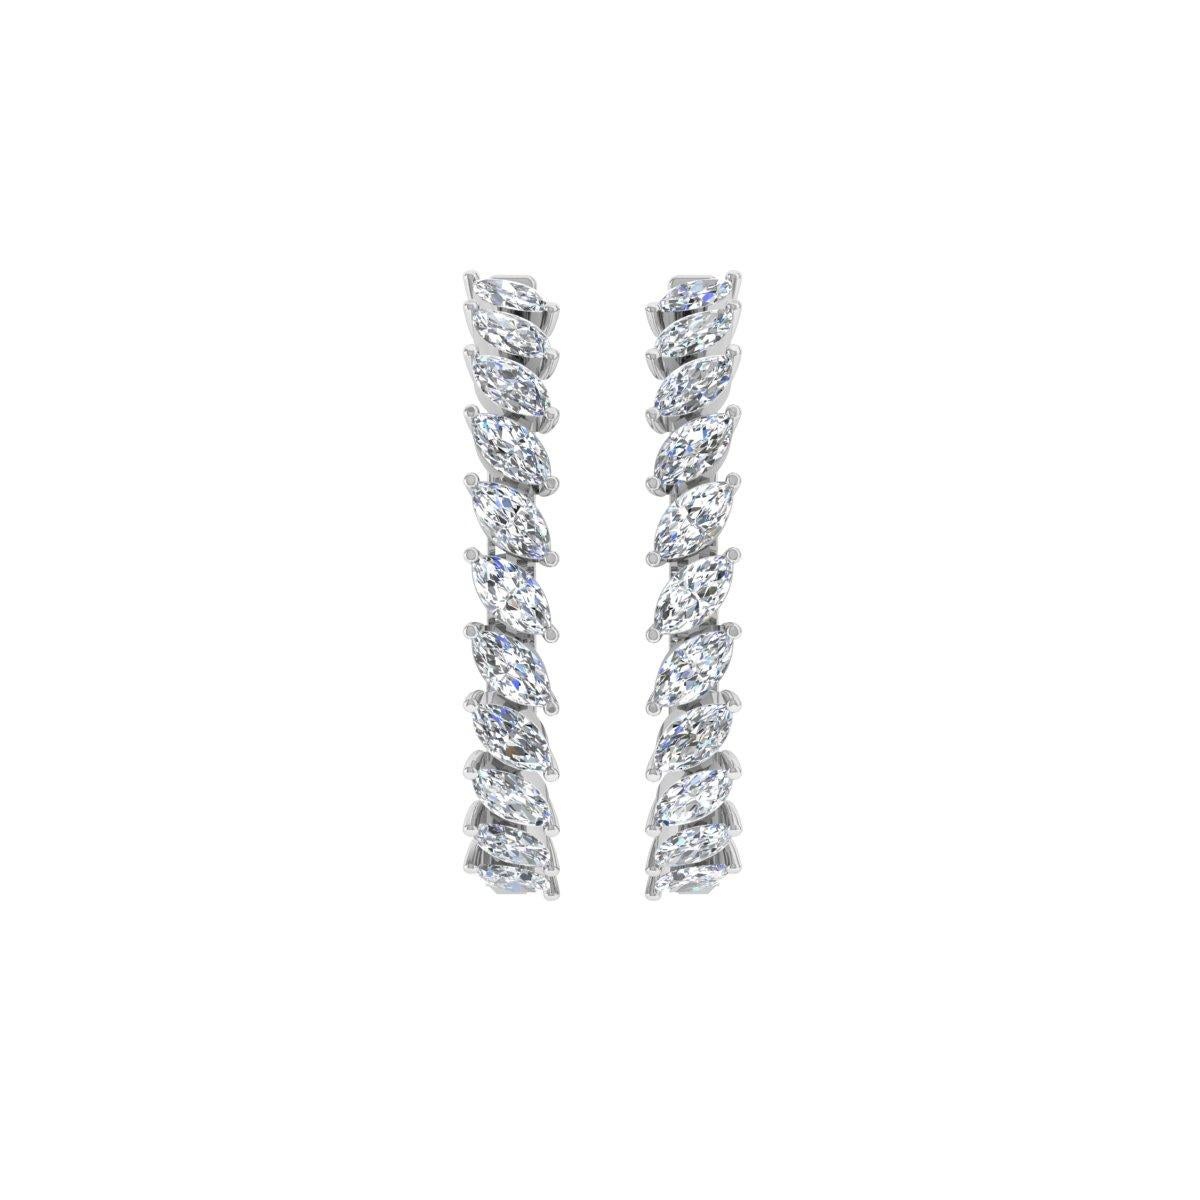 2.3 Carat Marquise Shape Diamond Hoop Earrings 18 Karat White Gold Fine Jewelry For Sale 2